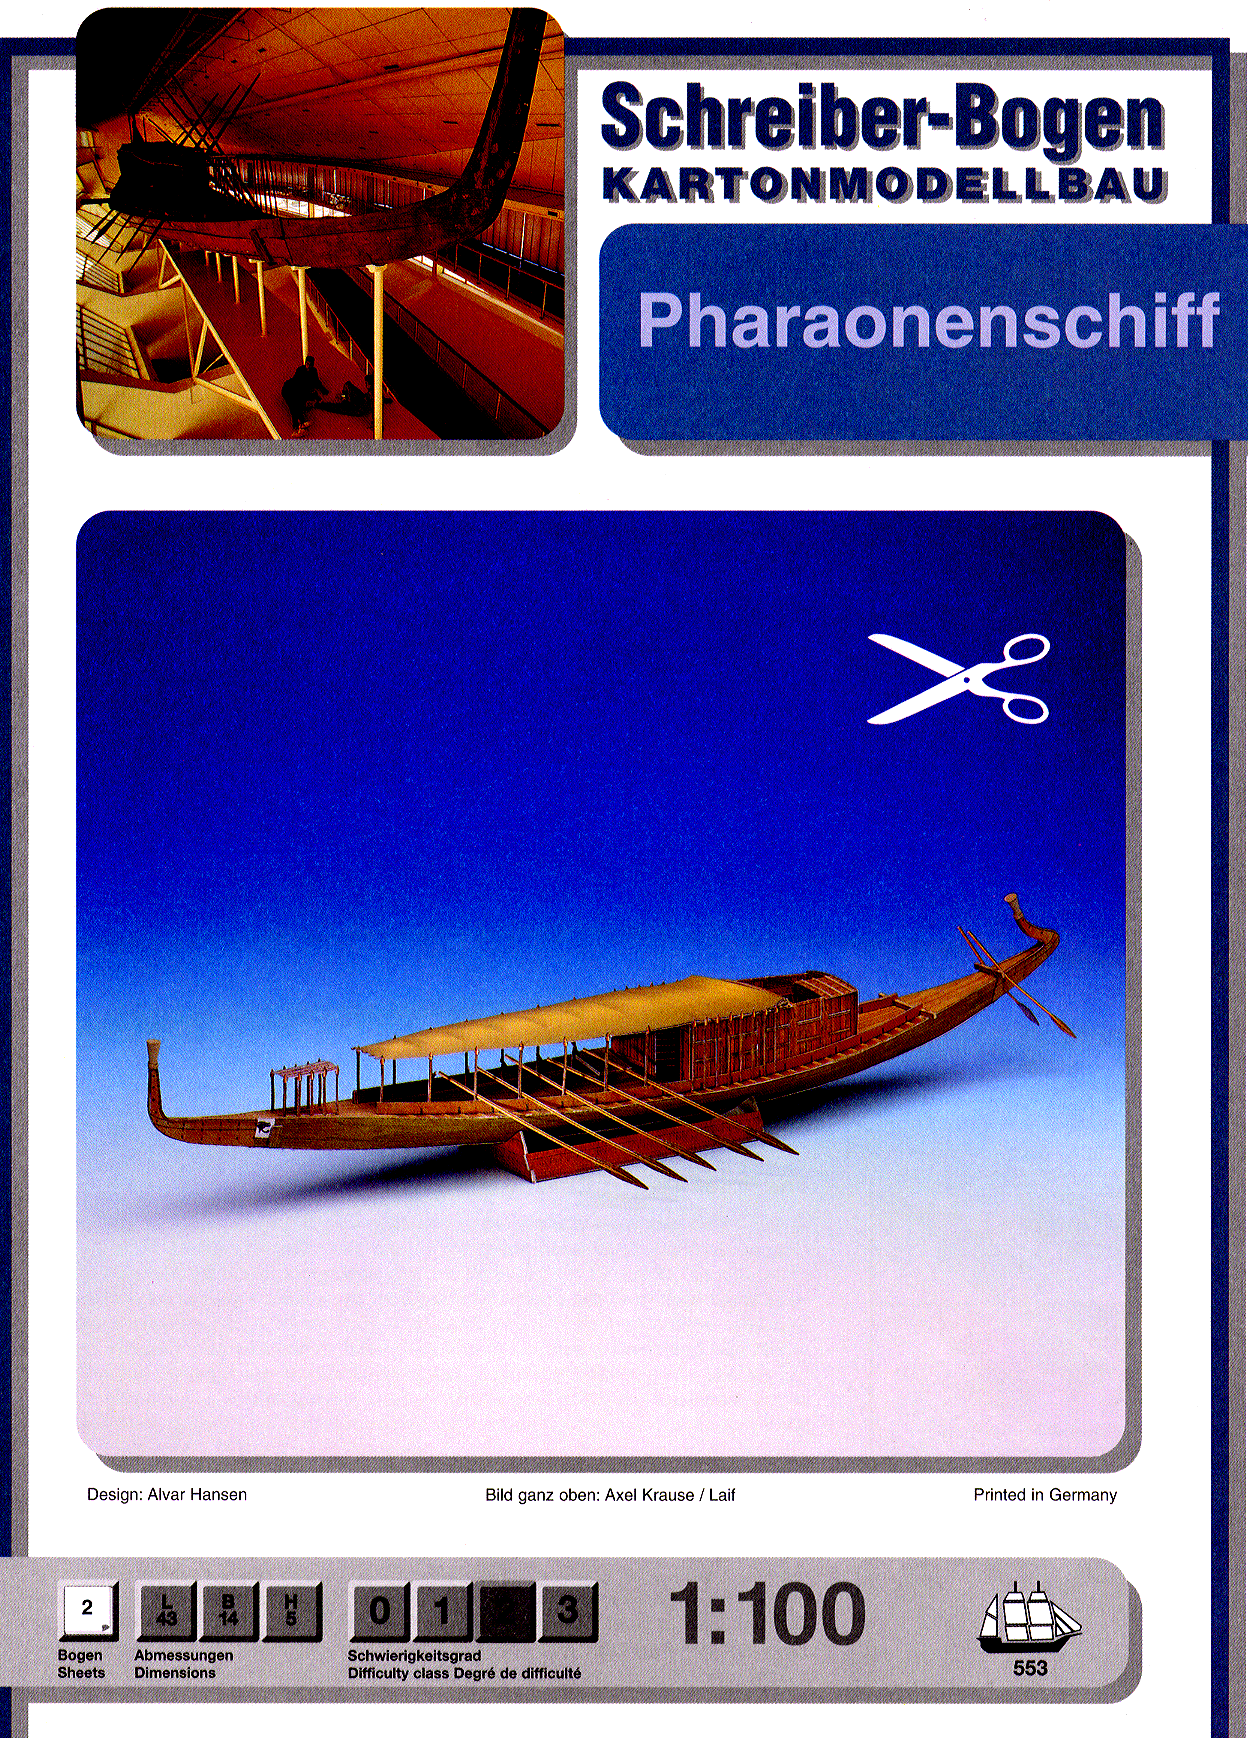 Schreiber-Bogen - Pharaonenschiff - Cheops Boat cover.tiff